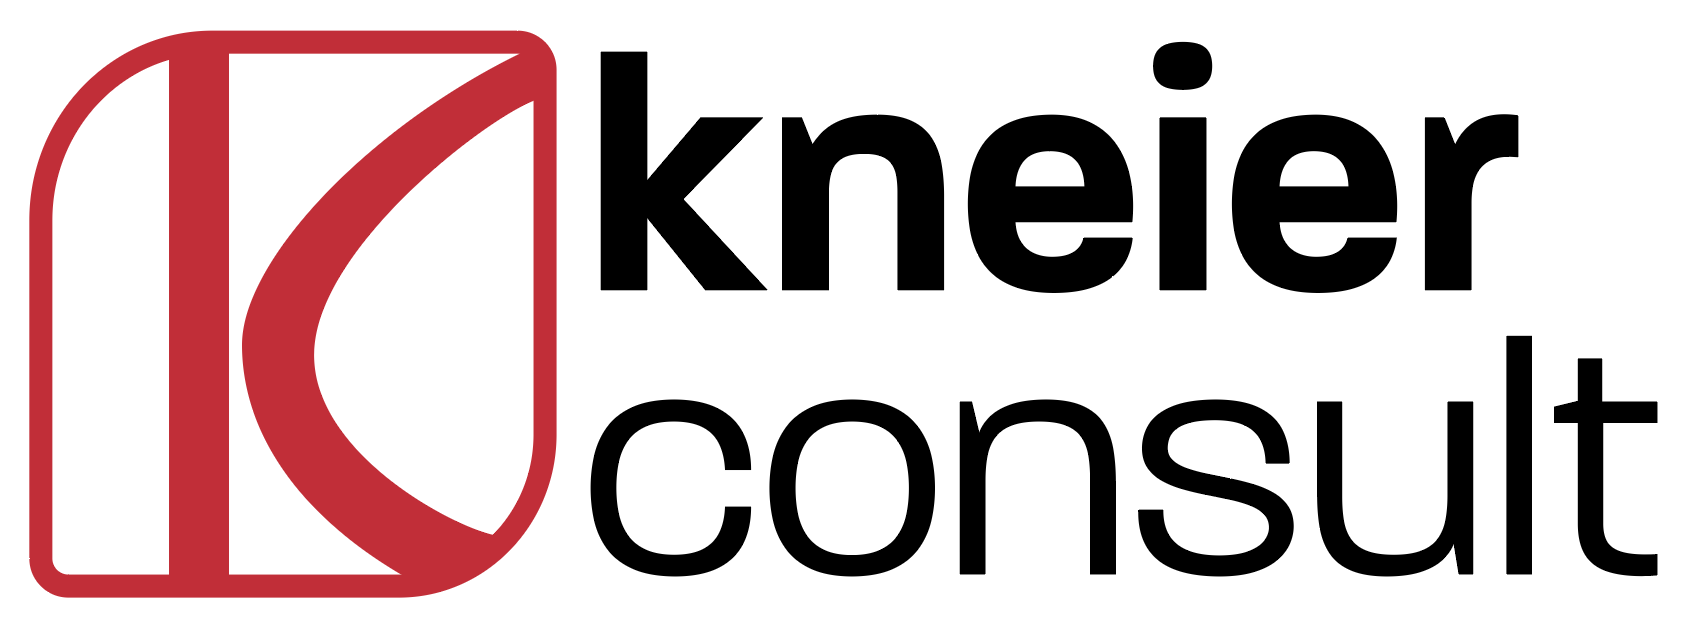 kneier consult GmbH